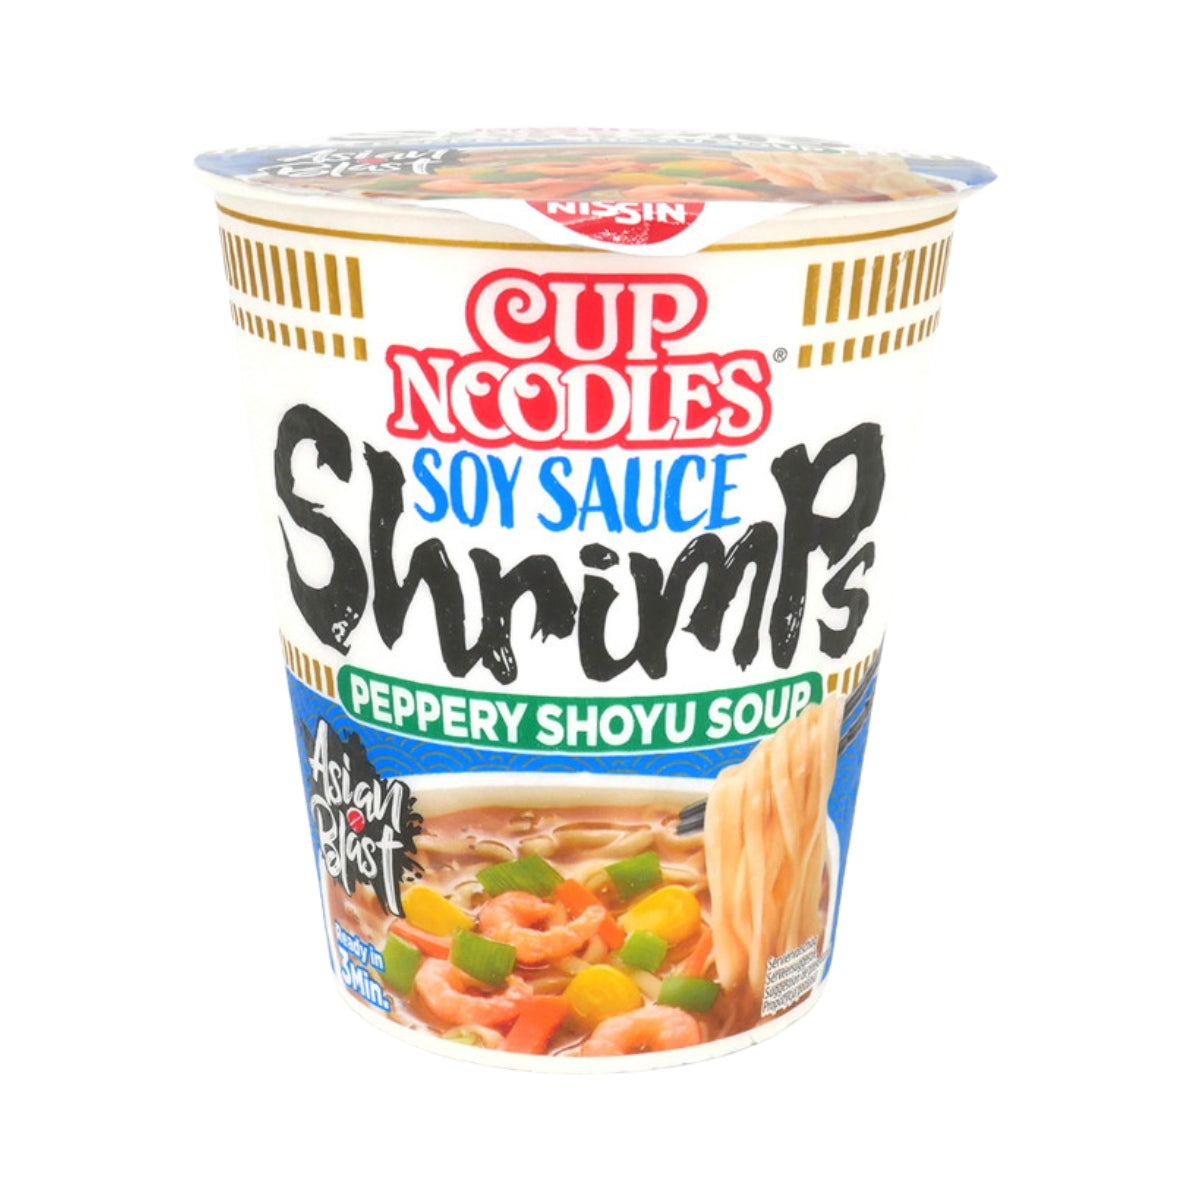 Nissin Cup Noodles Soy Sauce Shrimp 63g